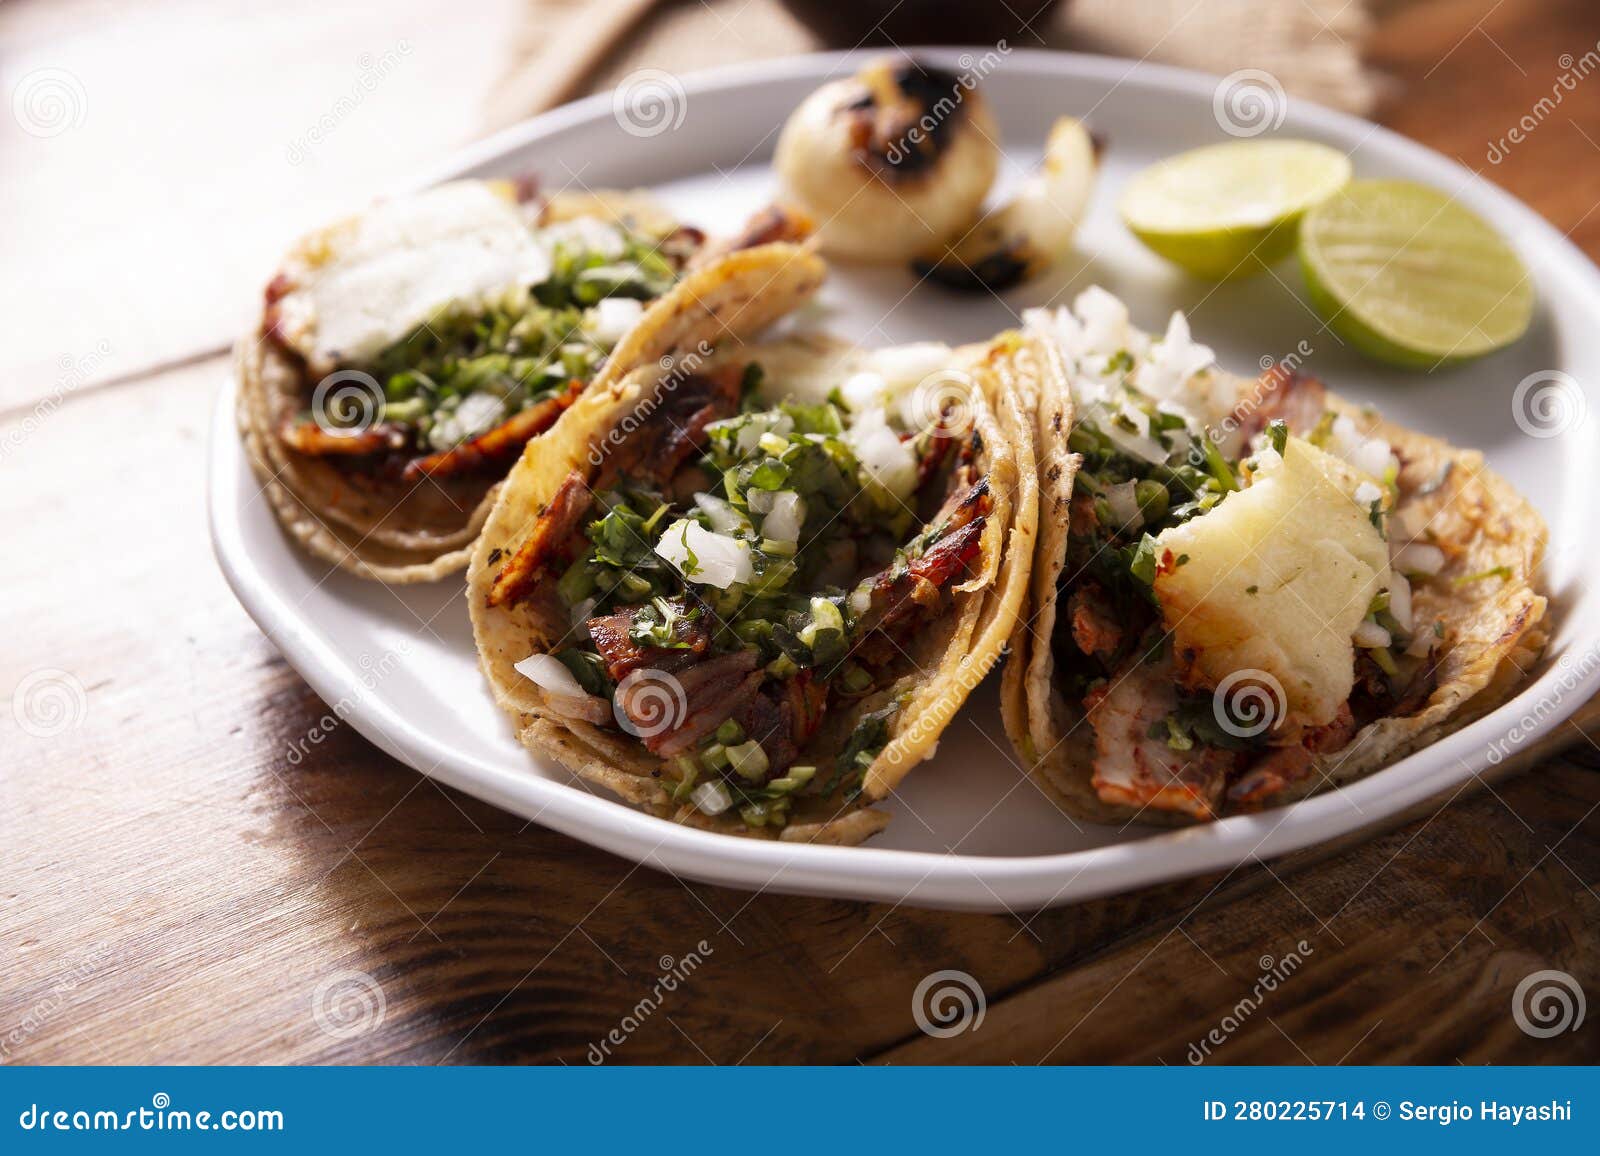 tacos al pastor closeup